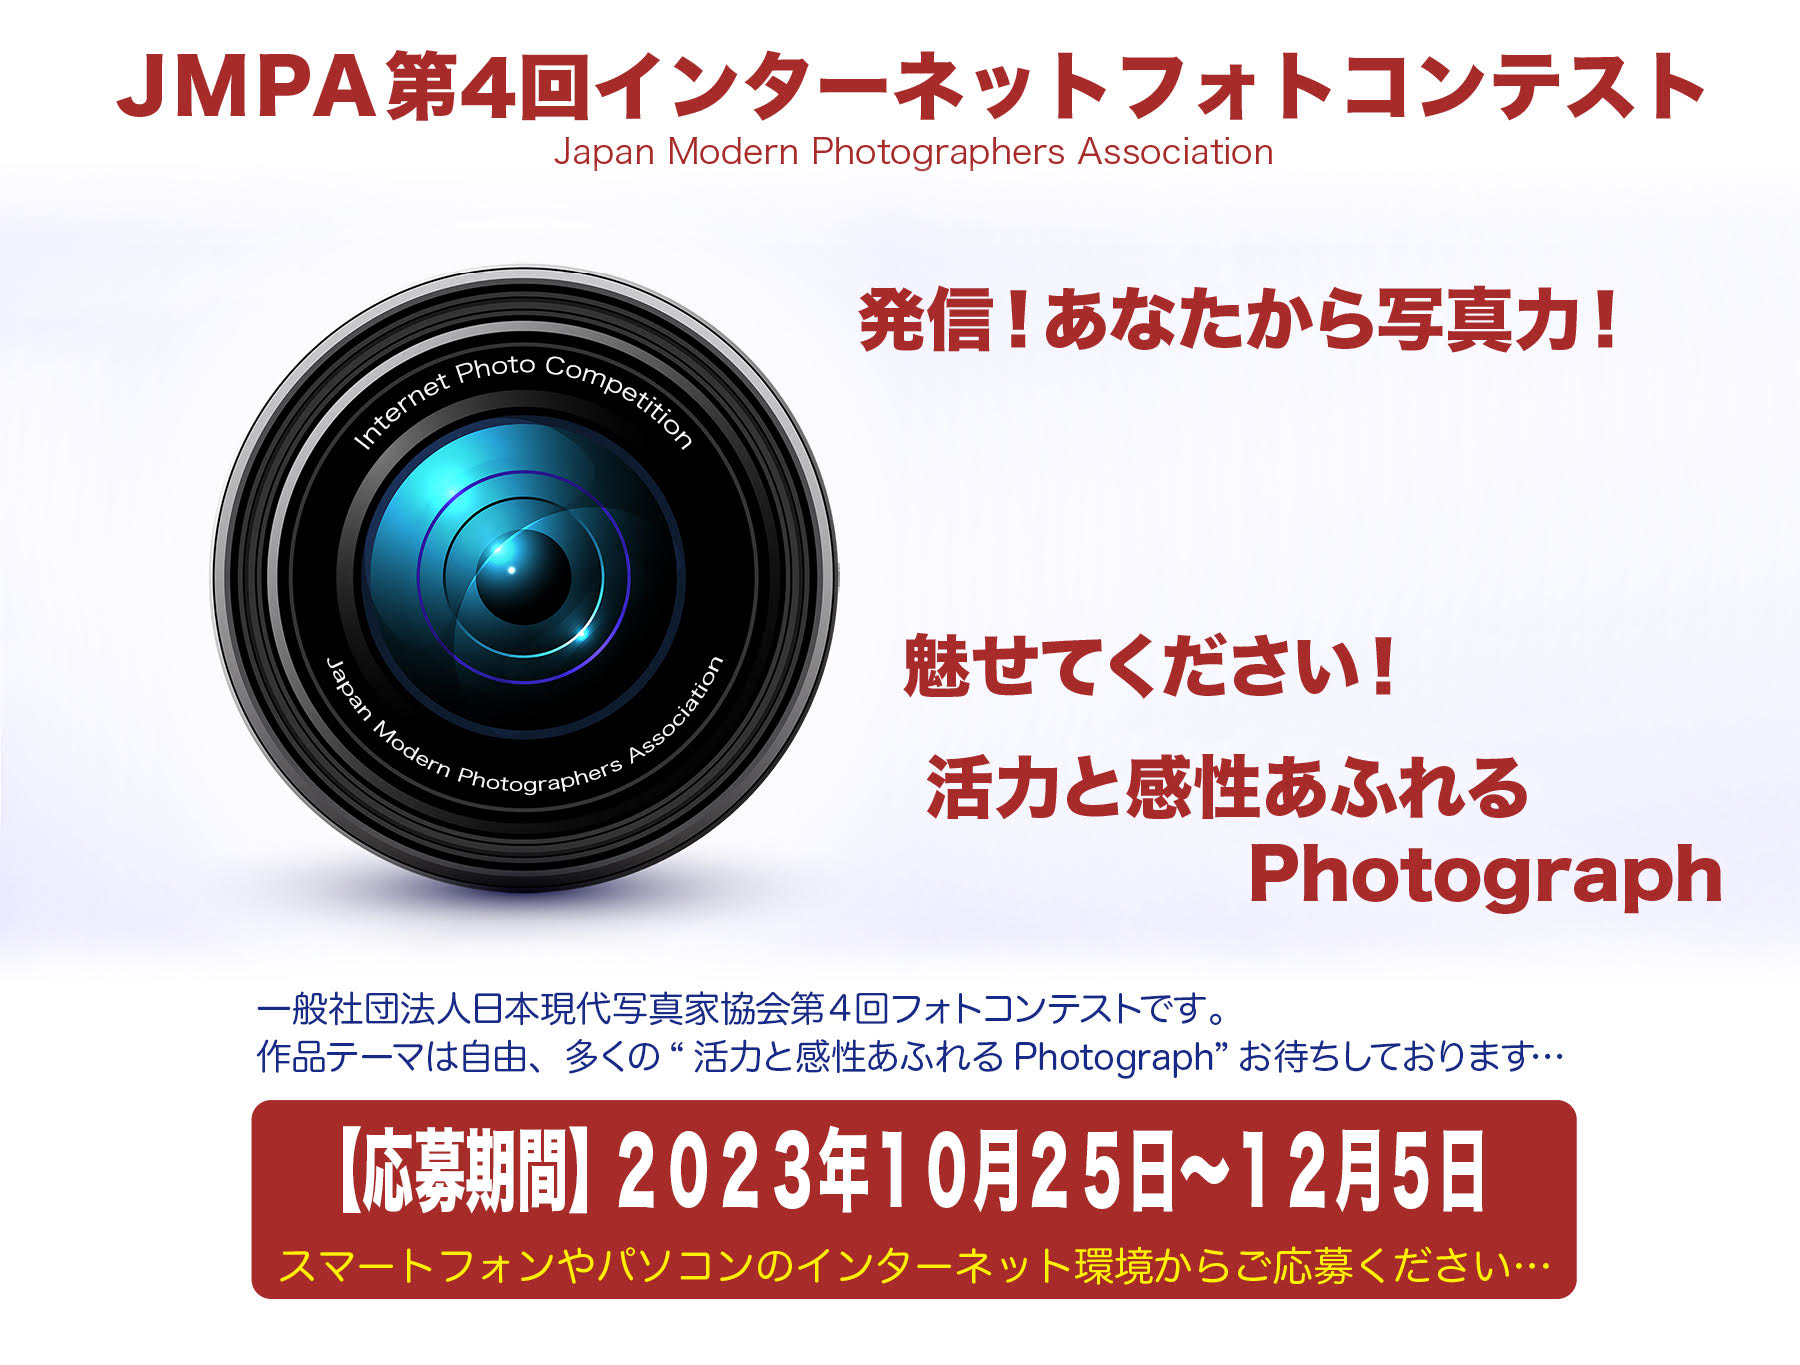 「JMPA第4回インターネットフォトコンテスト」Japan Modern Photographers Association　発信！あなたから写真力！魅せてください！活力と感性あふれるPhotograph　一般社団法人日本現代写真家協会の写真コンテストです。作品テーマは自由です。多くの「活力あふれるPhotograph」お待ちしております。【応募期間】2023年10月25日～12月5日 スマートフォンやパソコンのインターネット環境からご応募ください。